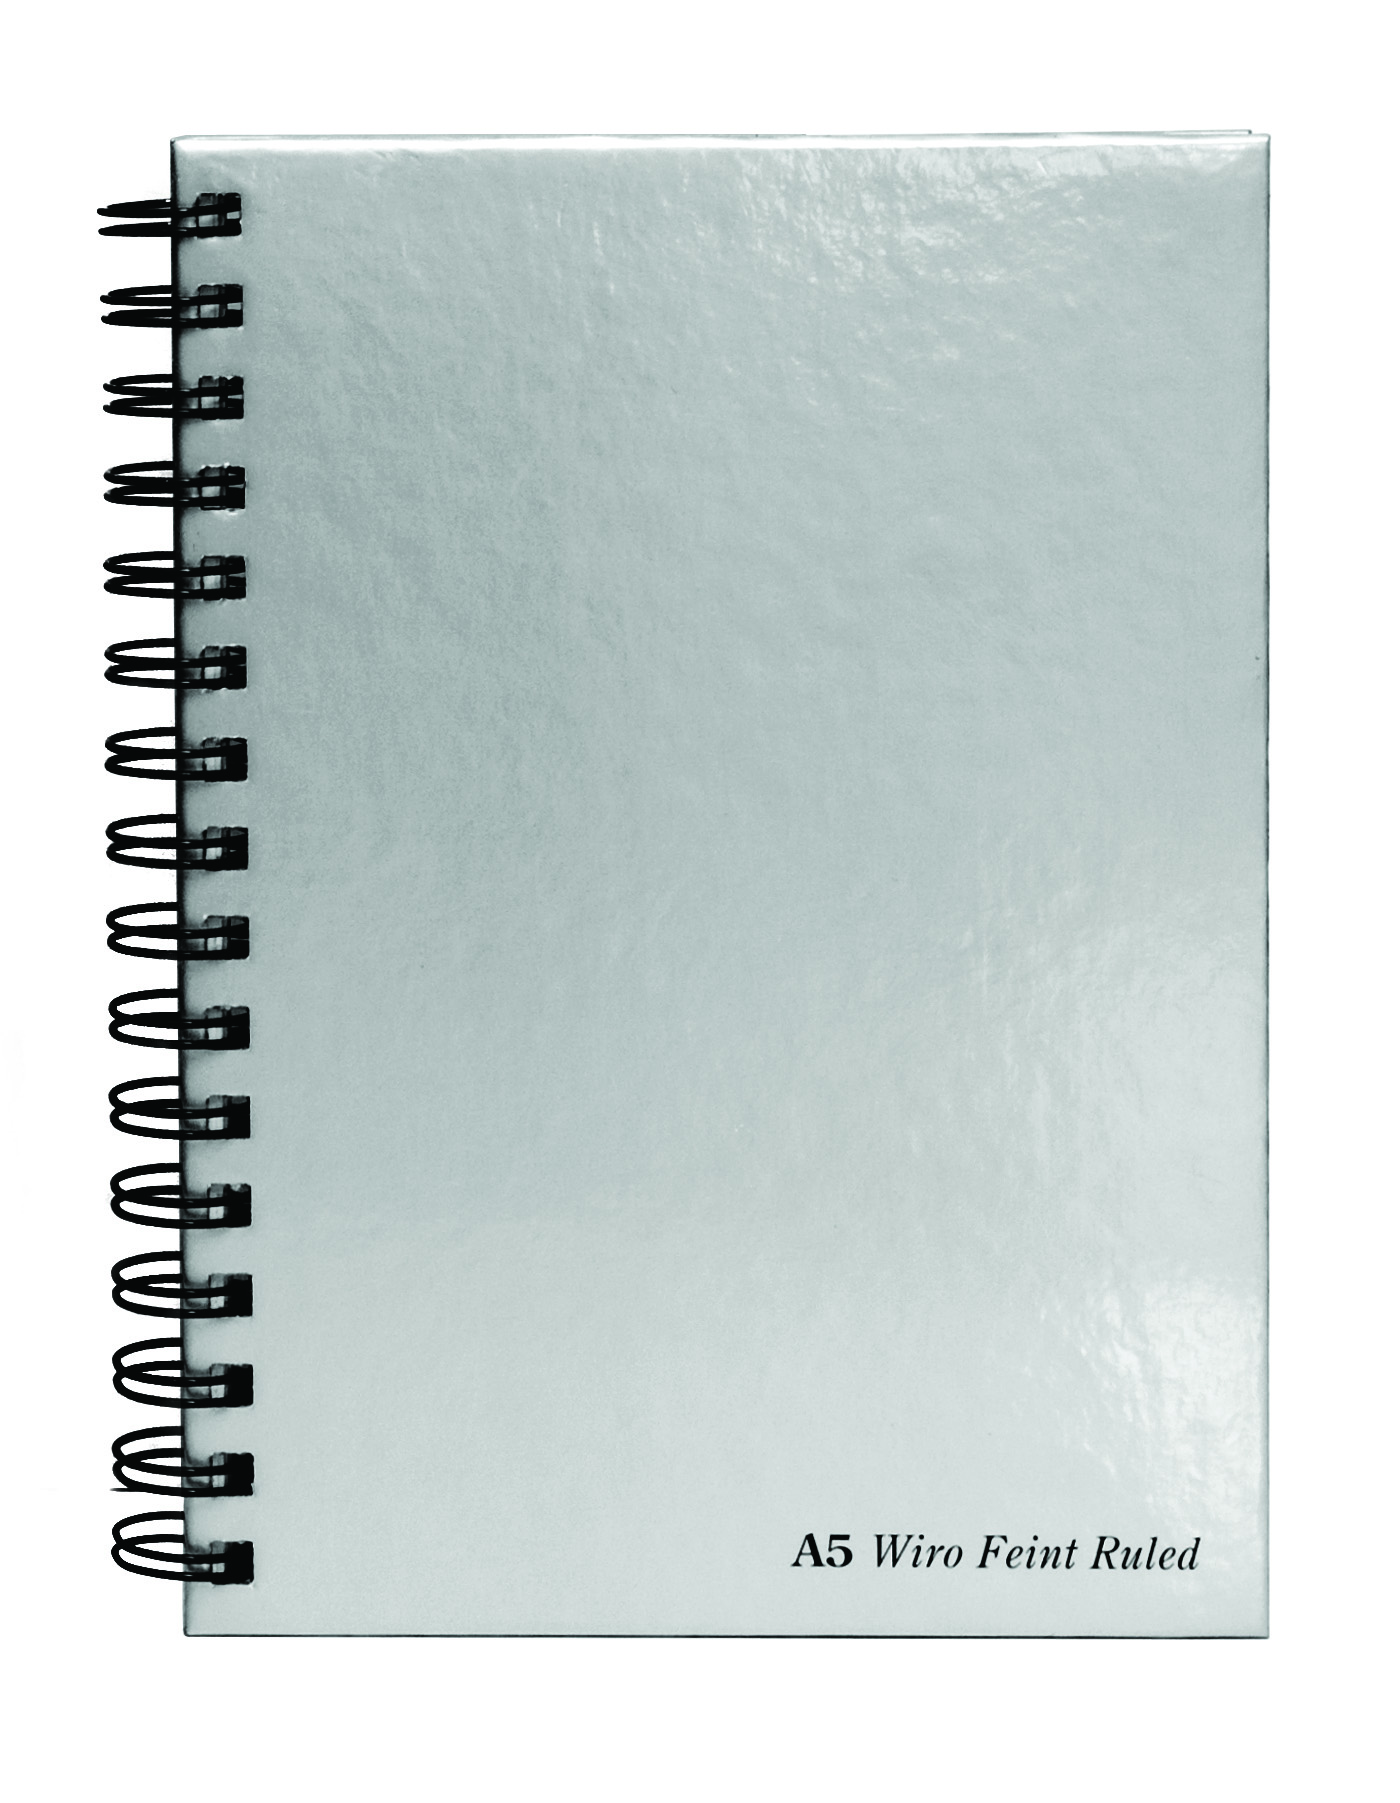 Caiet cu spirala si microperforatii Pukka Pads Wirebound, A5, dictando, 160 pagini, coperta intarita